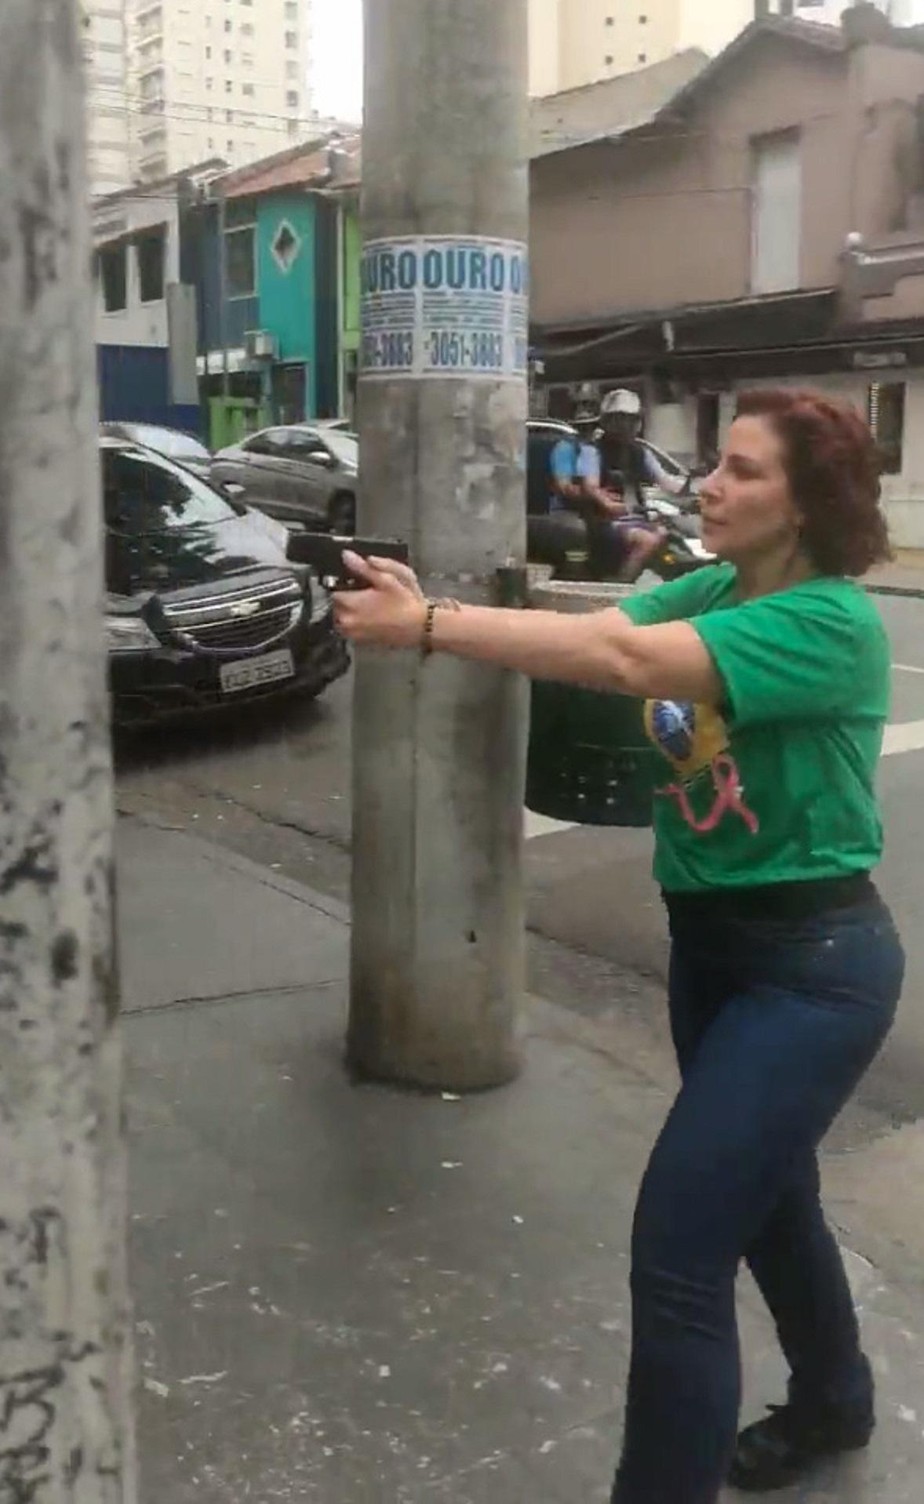 Deputada federal reeleita Carla Zambelli (PL-SP) aponta arma para homem em São Paulo Reprodução/Twitter